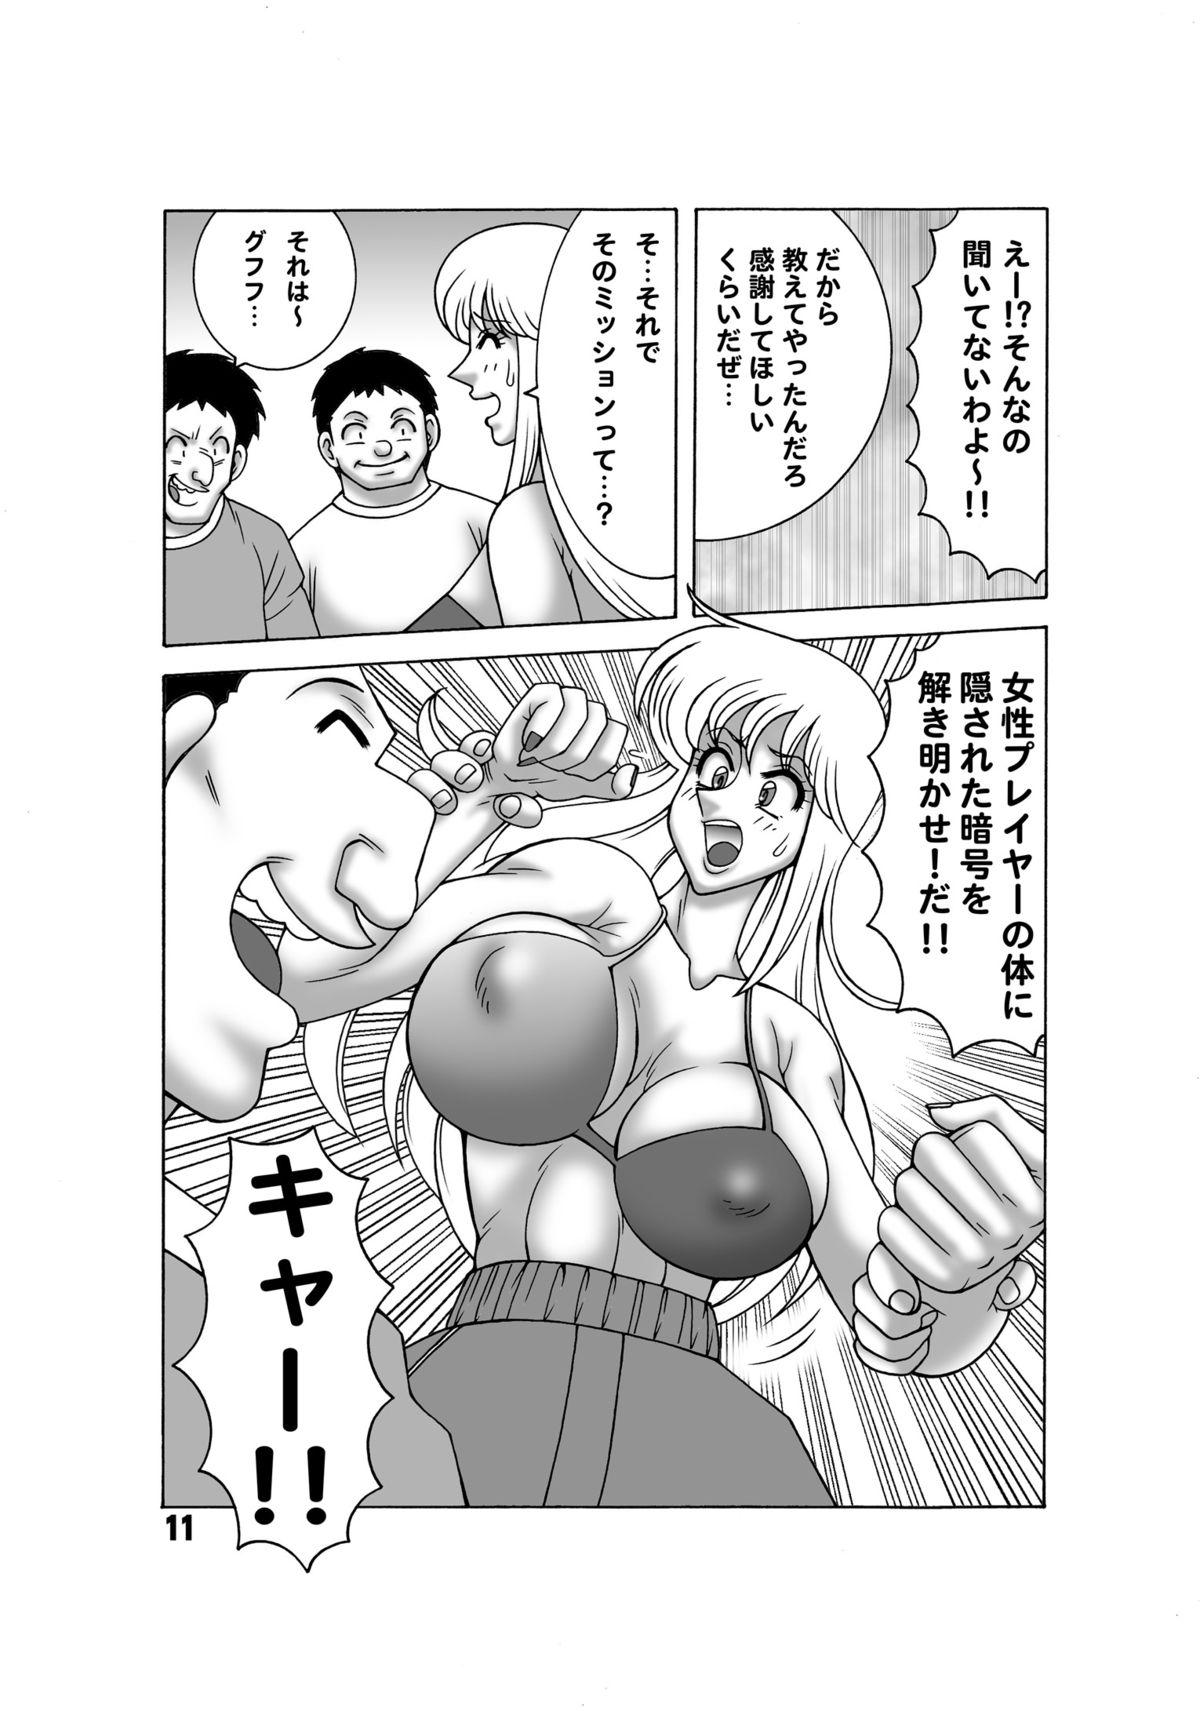 Uncensored Kochikame Dynamite 13 - Kochikame Exhibitionist - Page 10